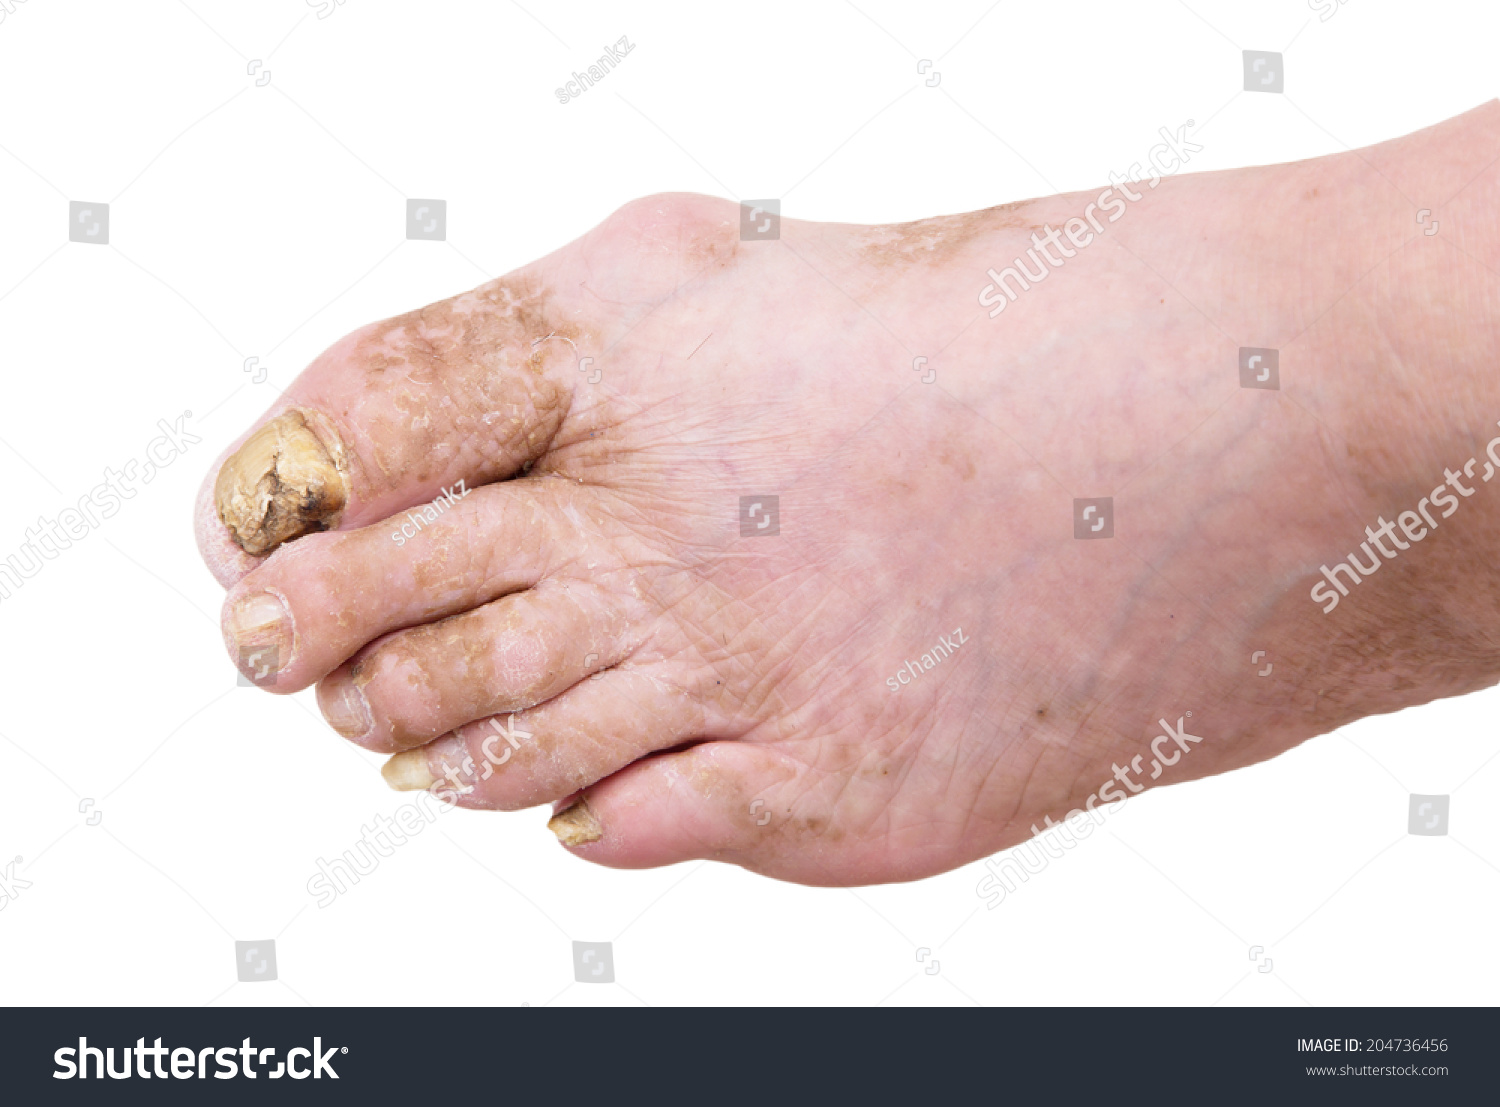 指甲真菌感染的人的脚-医疗保健,人物-海洛创意